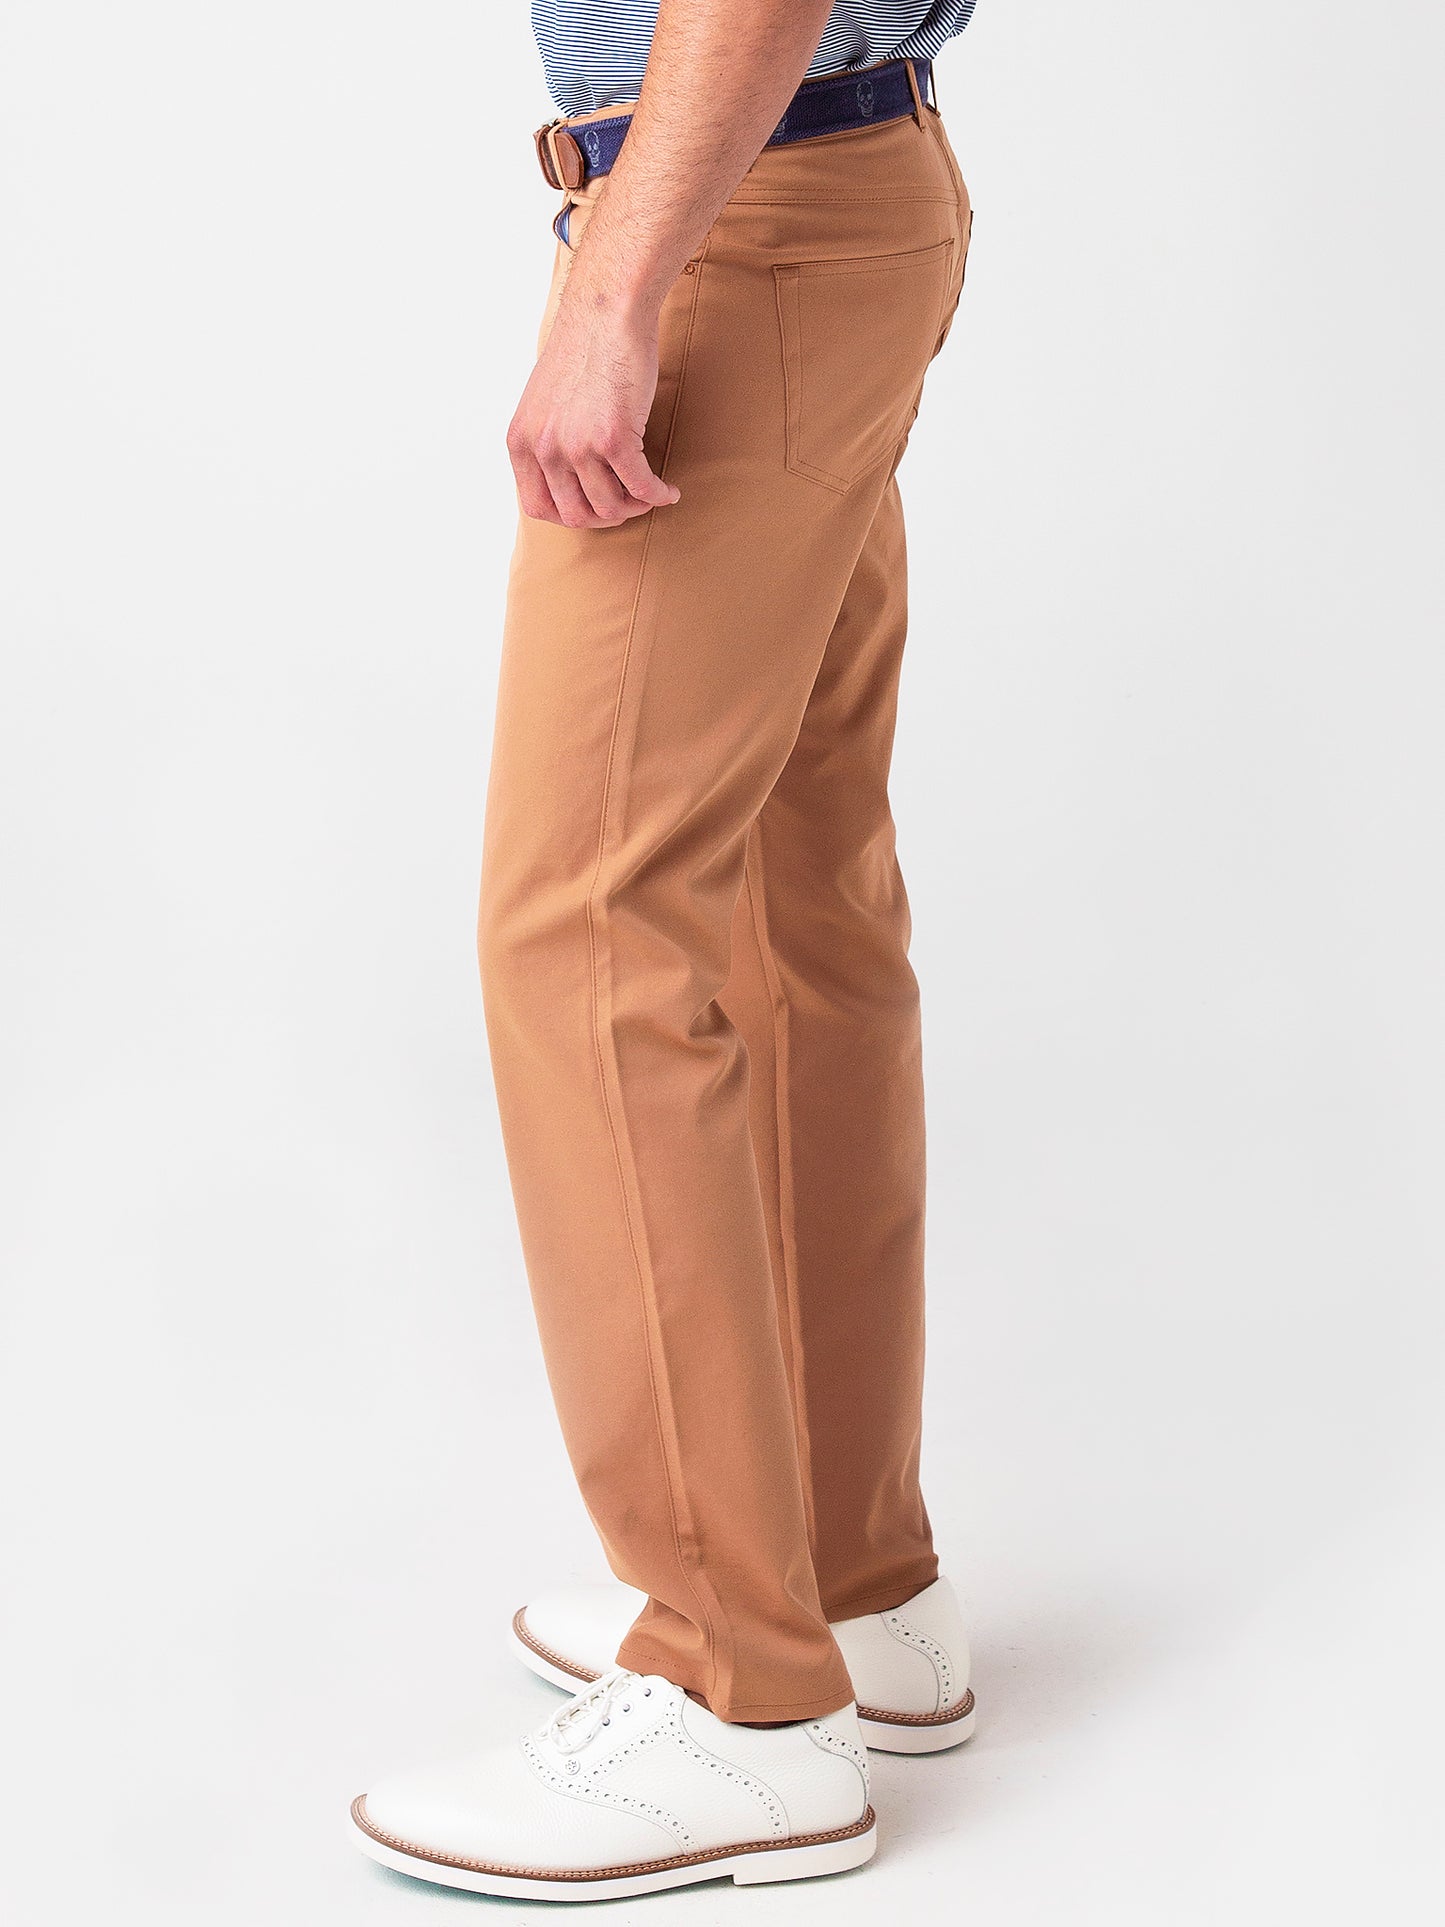 shop online sale Peter Millar Crown Sport EB66 5 Pocket Polyester Pants  (Men´s38x34) Gray/Tan